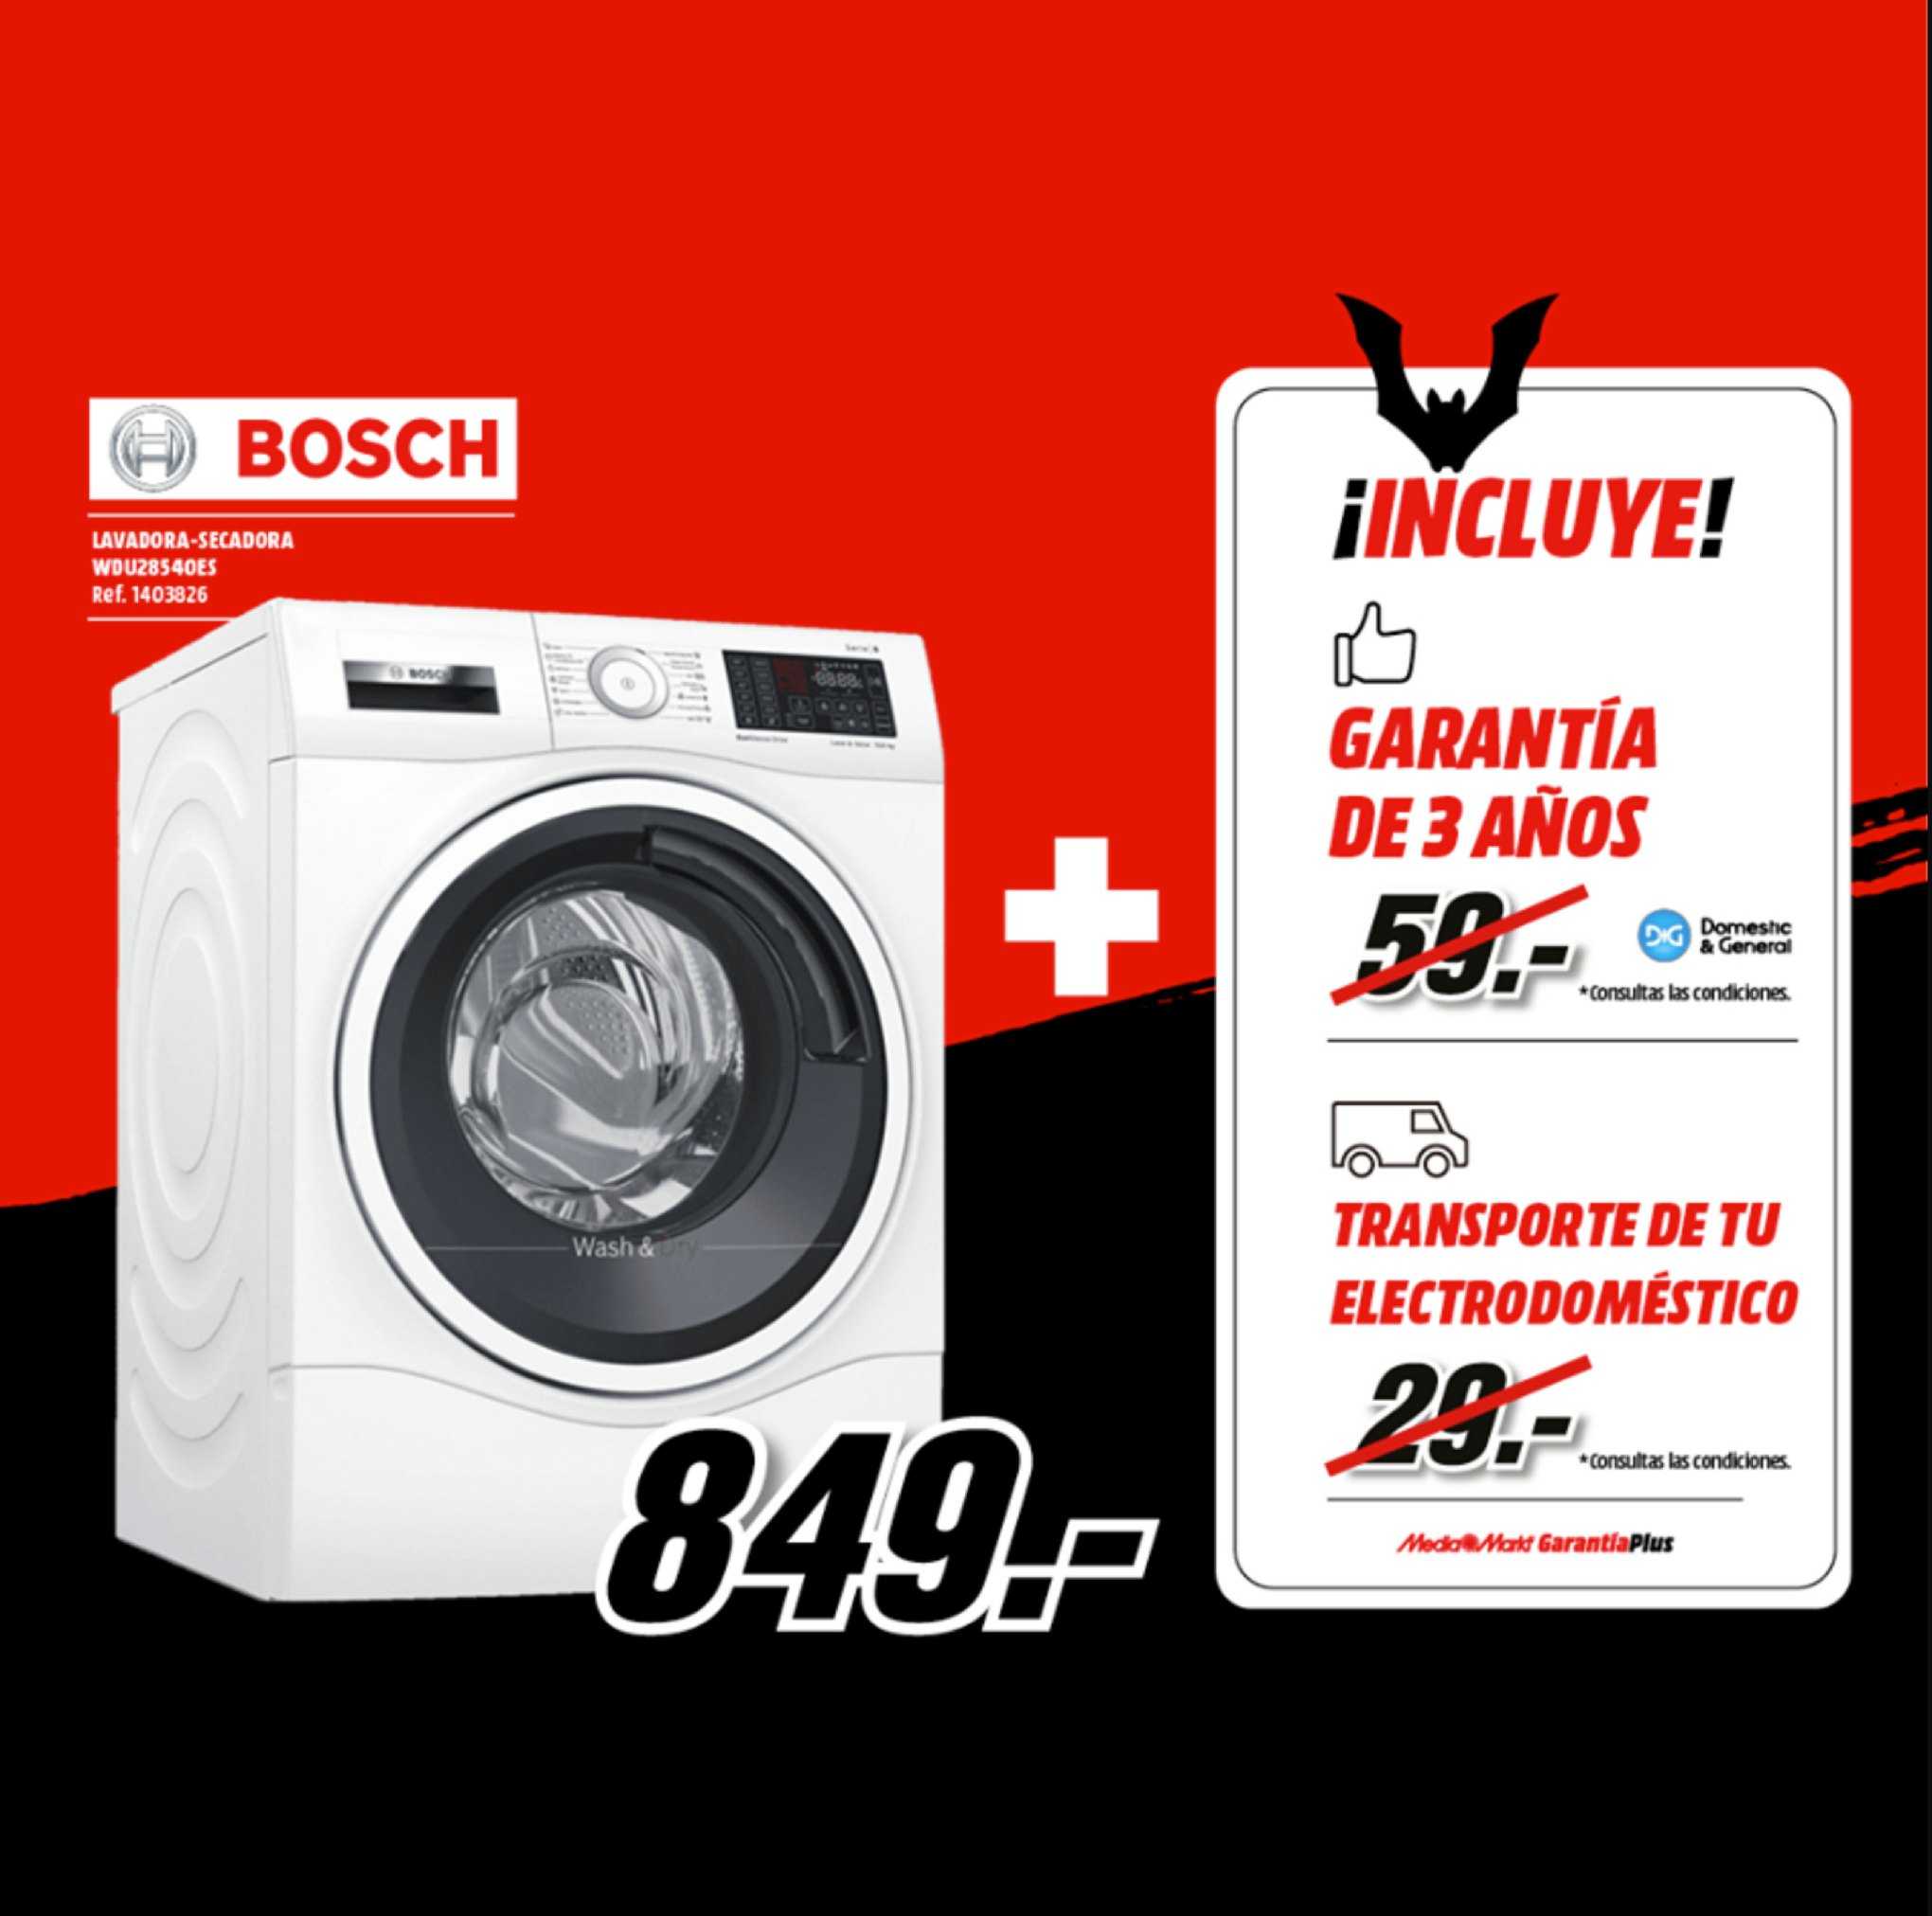 Oferta Bosch Lavadora en MediaMarkt